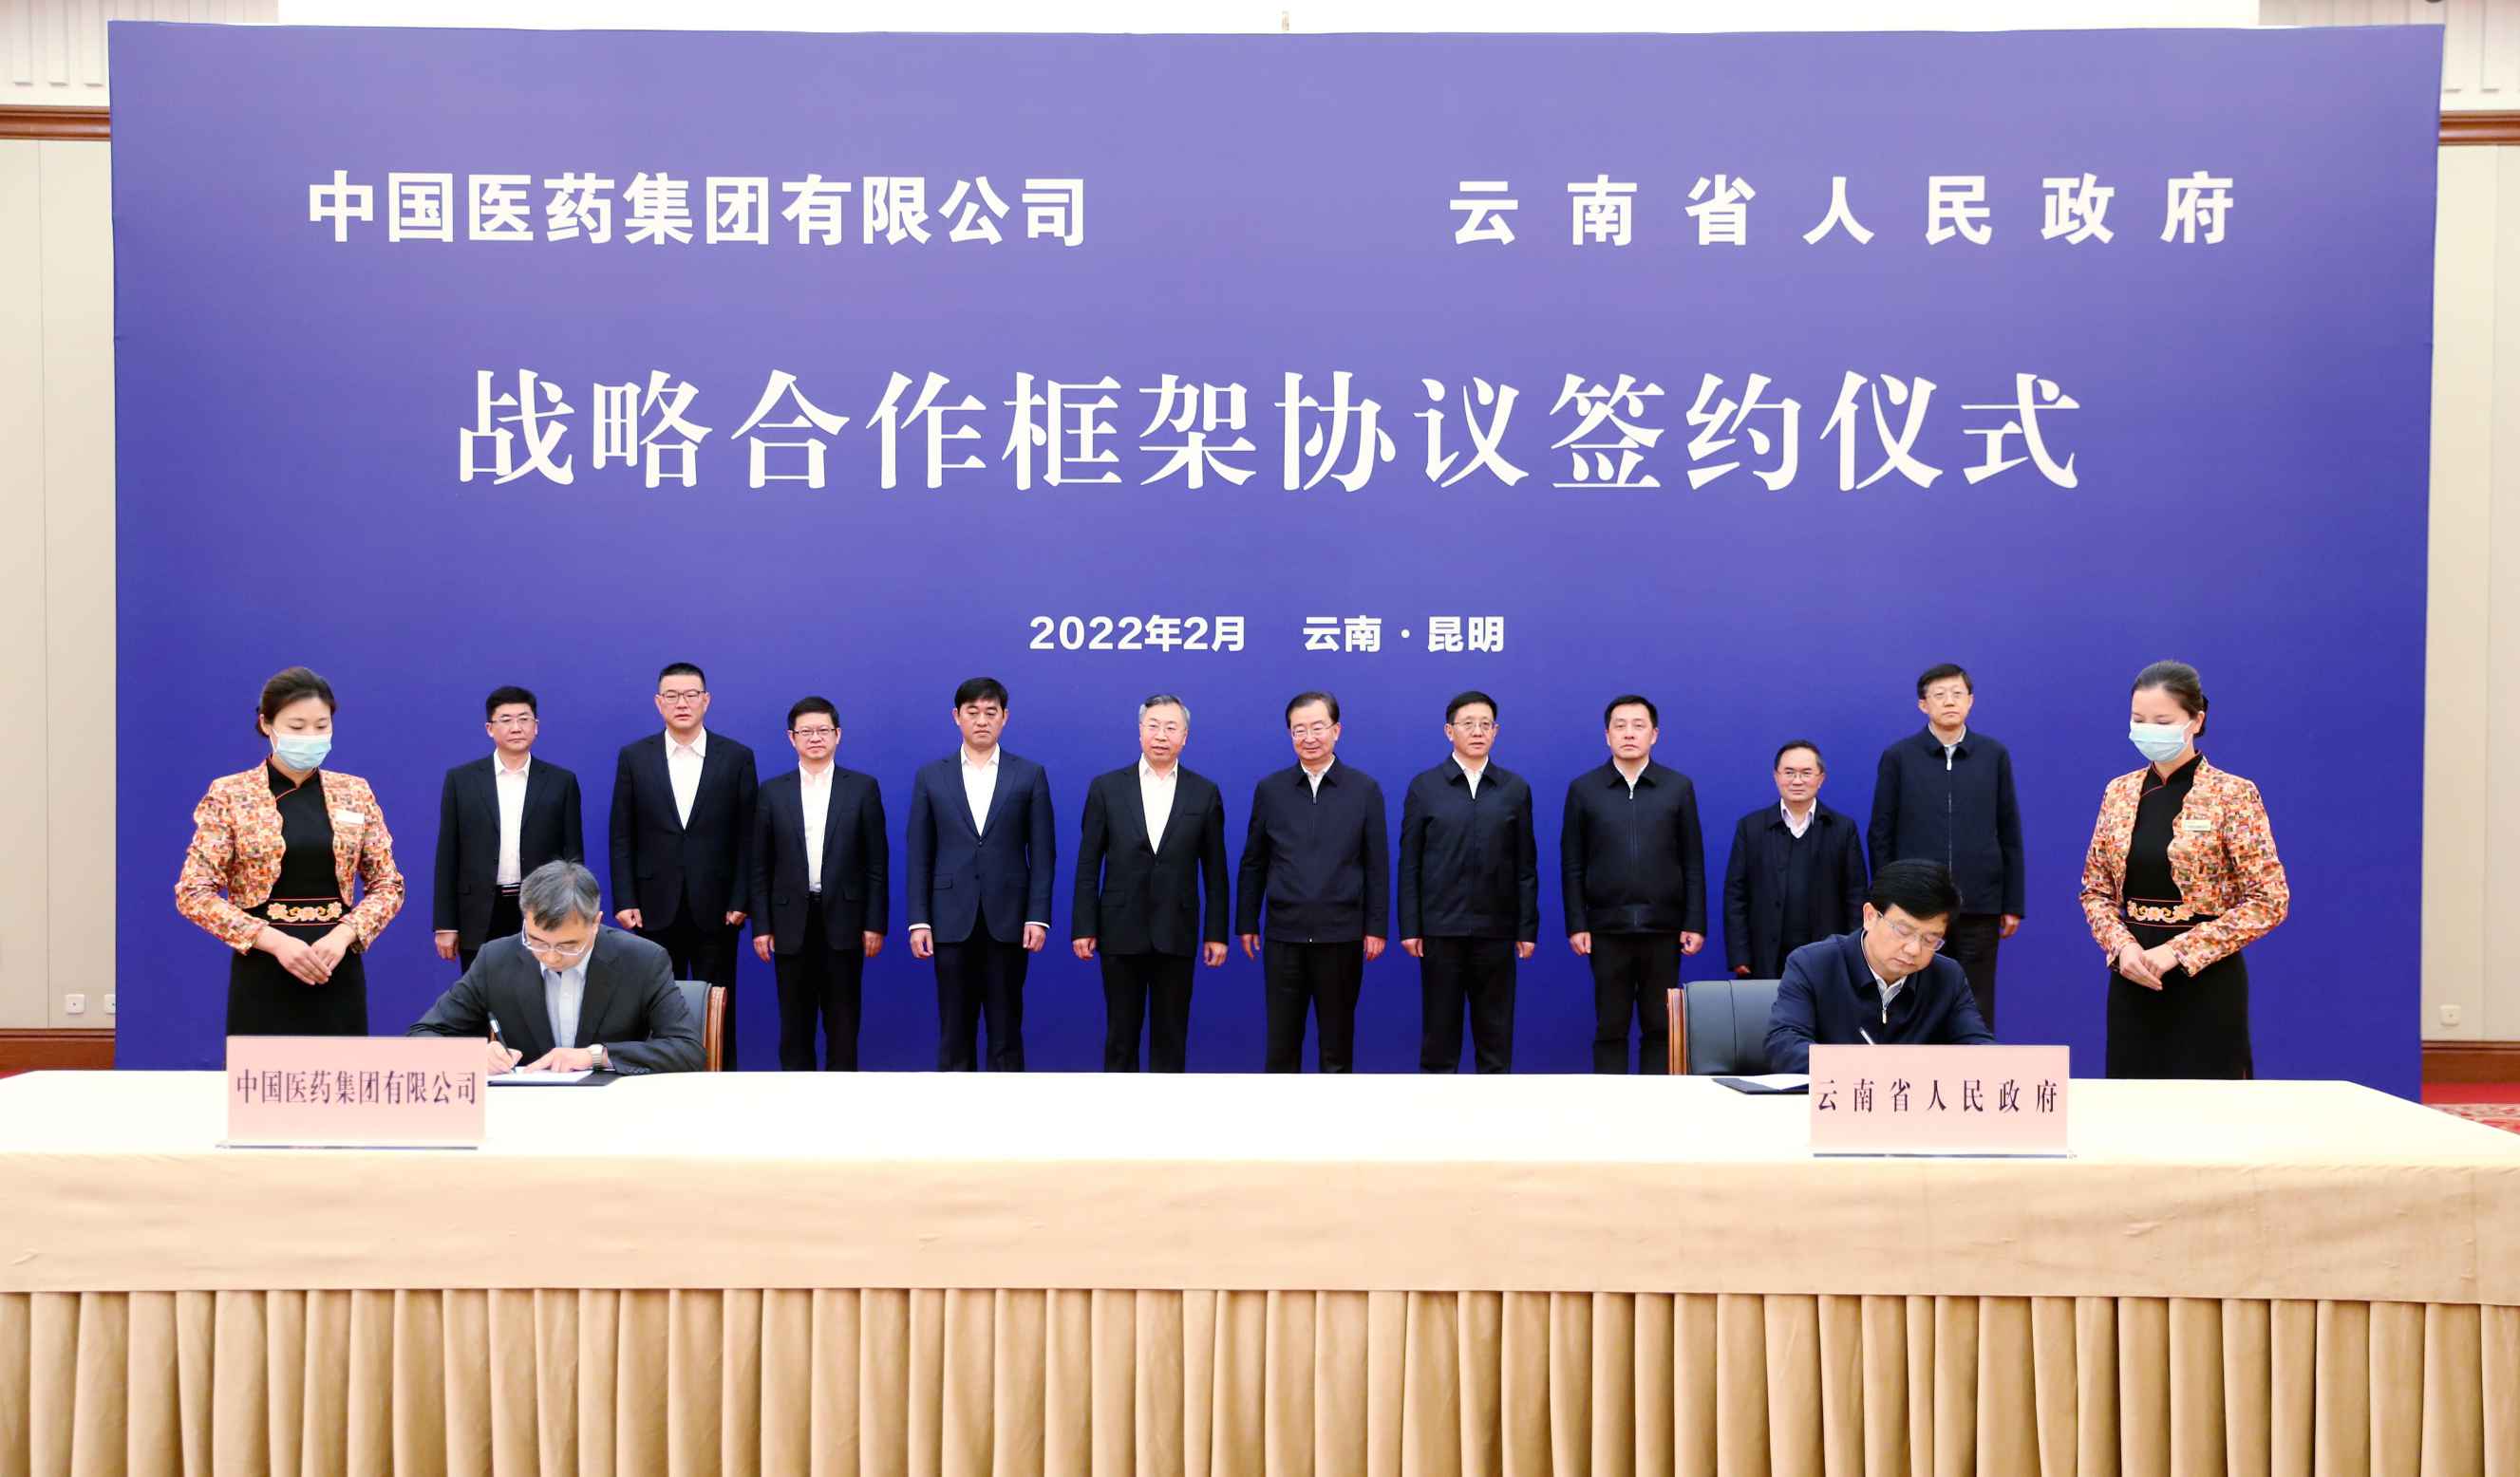 2022年2月27日，esb世博网集团与云南省人民政府签署战略合作框架协议